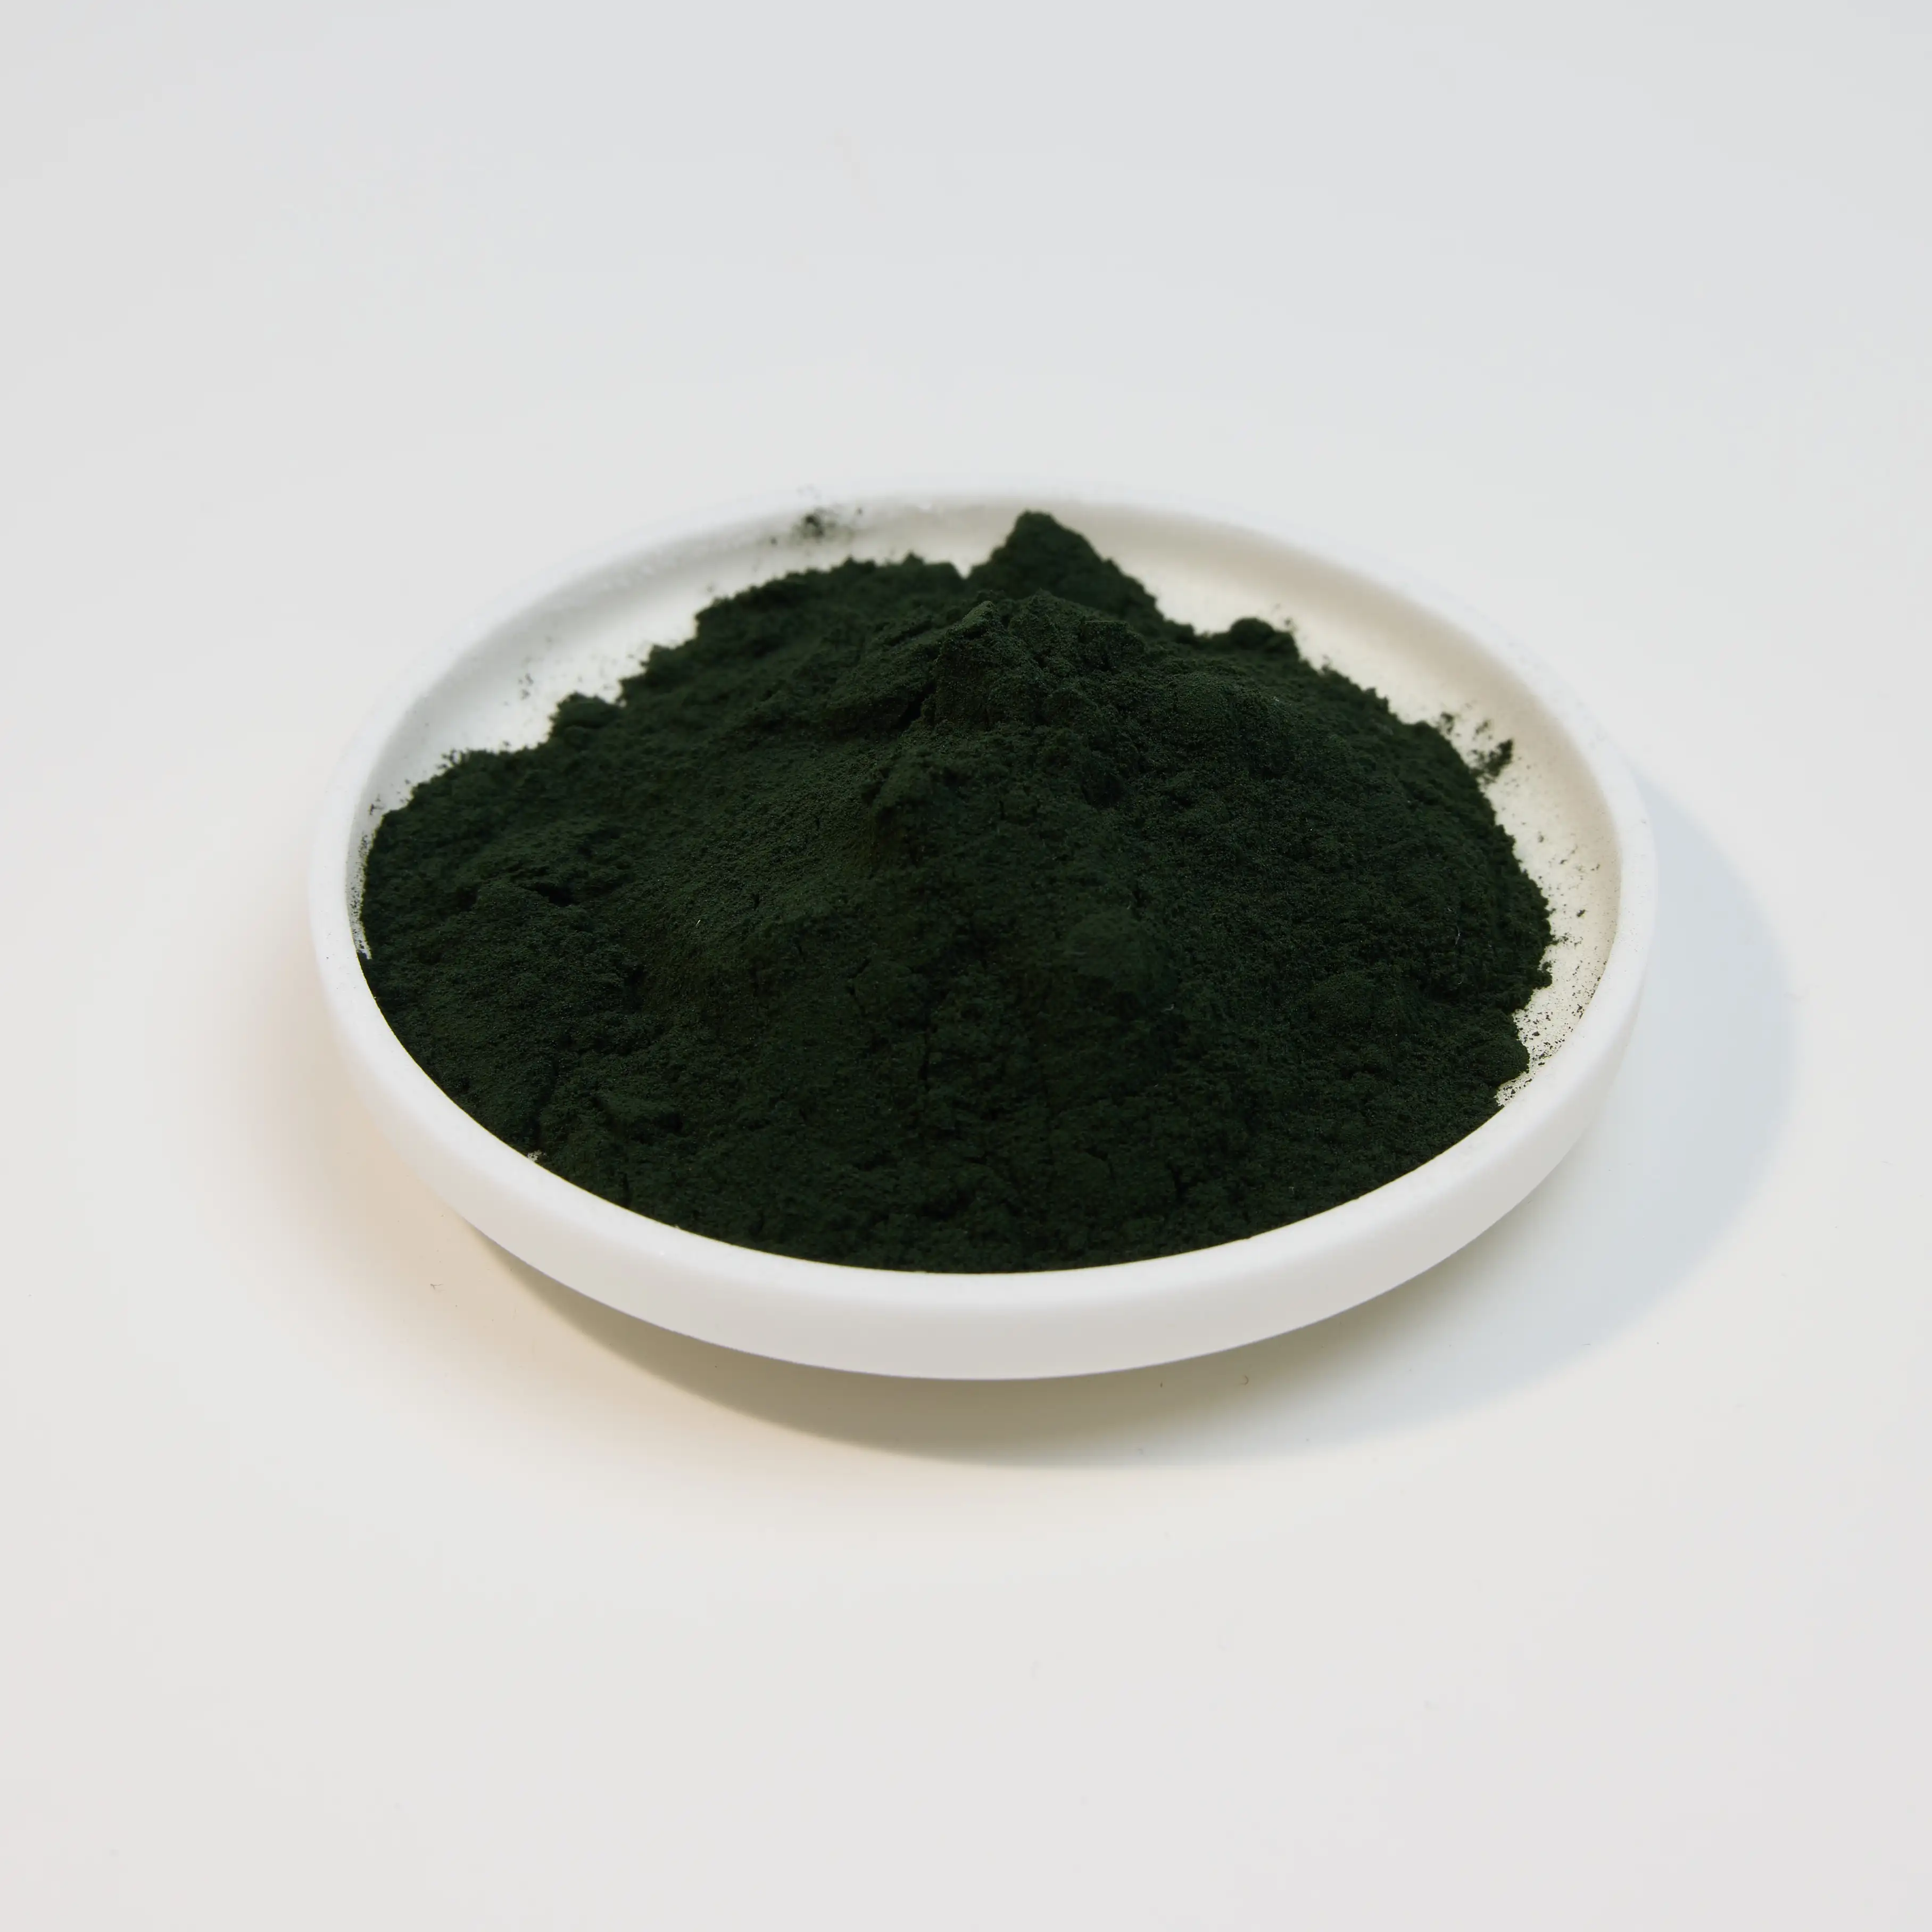 Protoga melhor preço Certificados completos china fabricante Green Spirulina Algae Powder